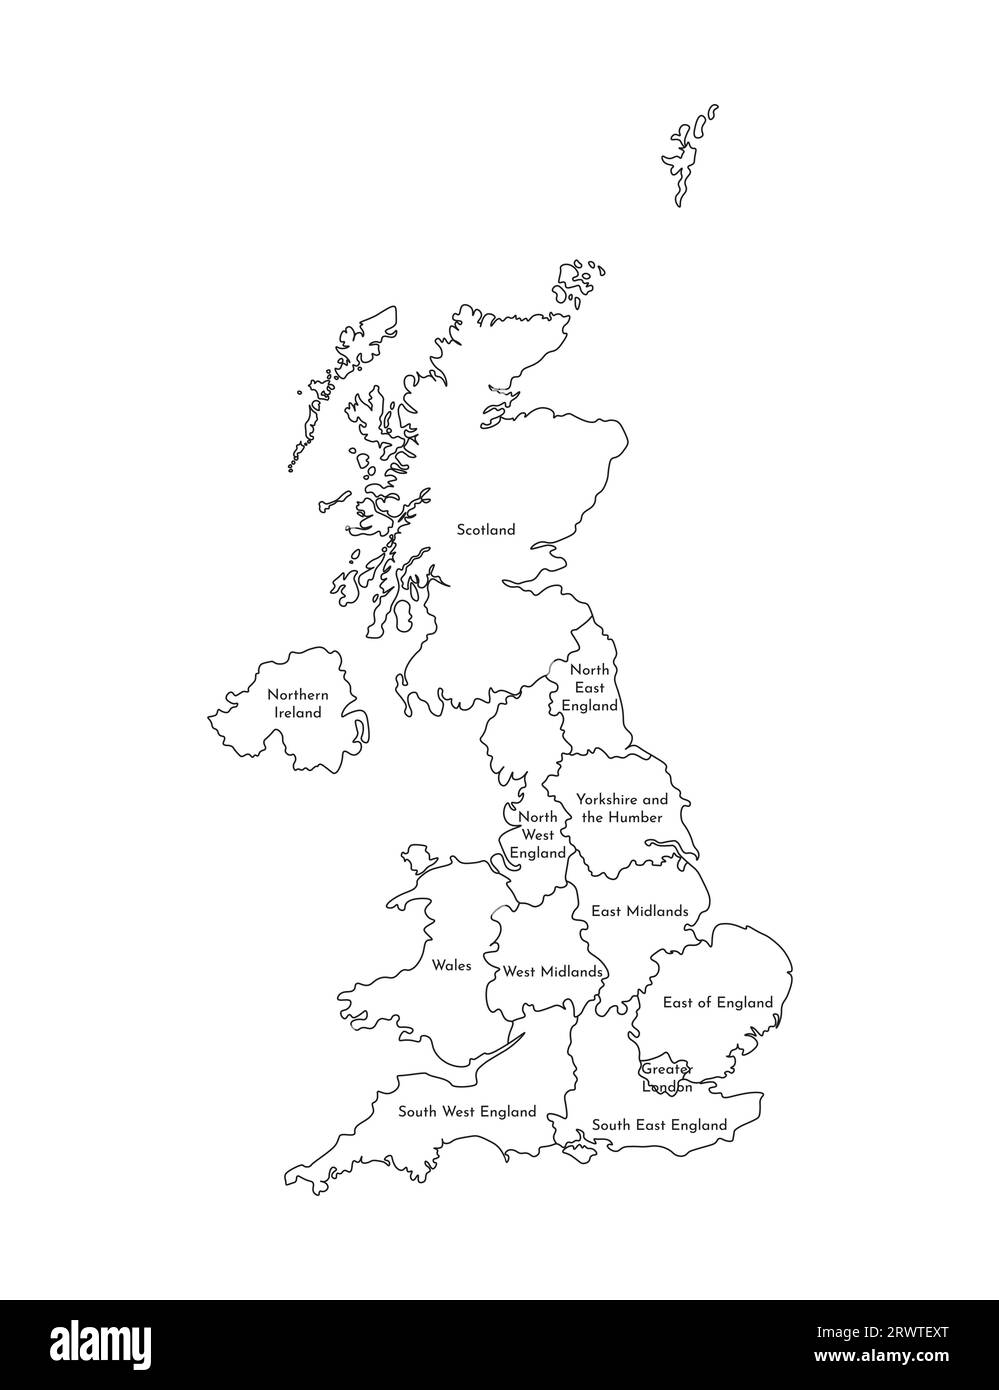 Vektor-isolierte Illustration einer vereinfachten Verwaltungskarte des Vereinigten Königreichs Großbritannien und Nordirland. Rahmen und Namen des Re Stock Vektor